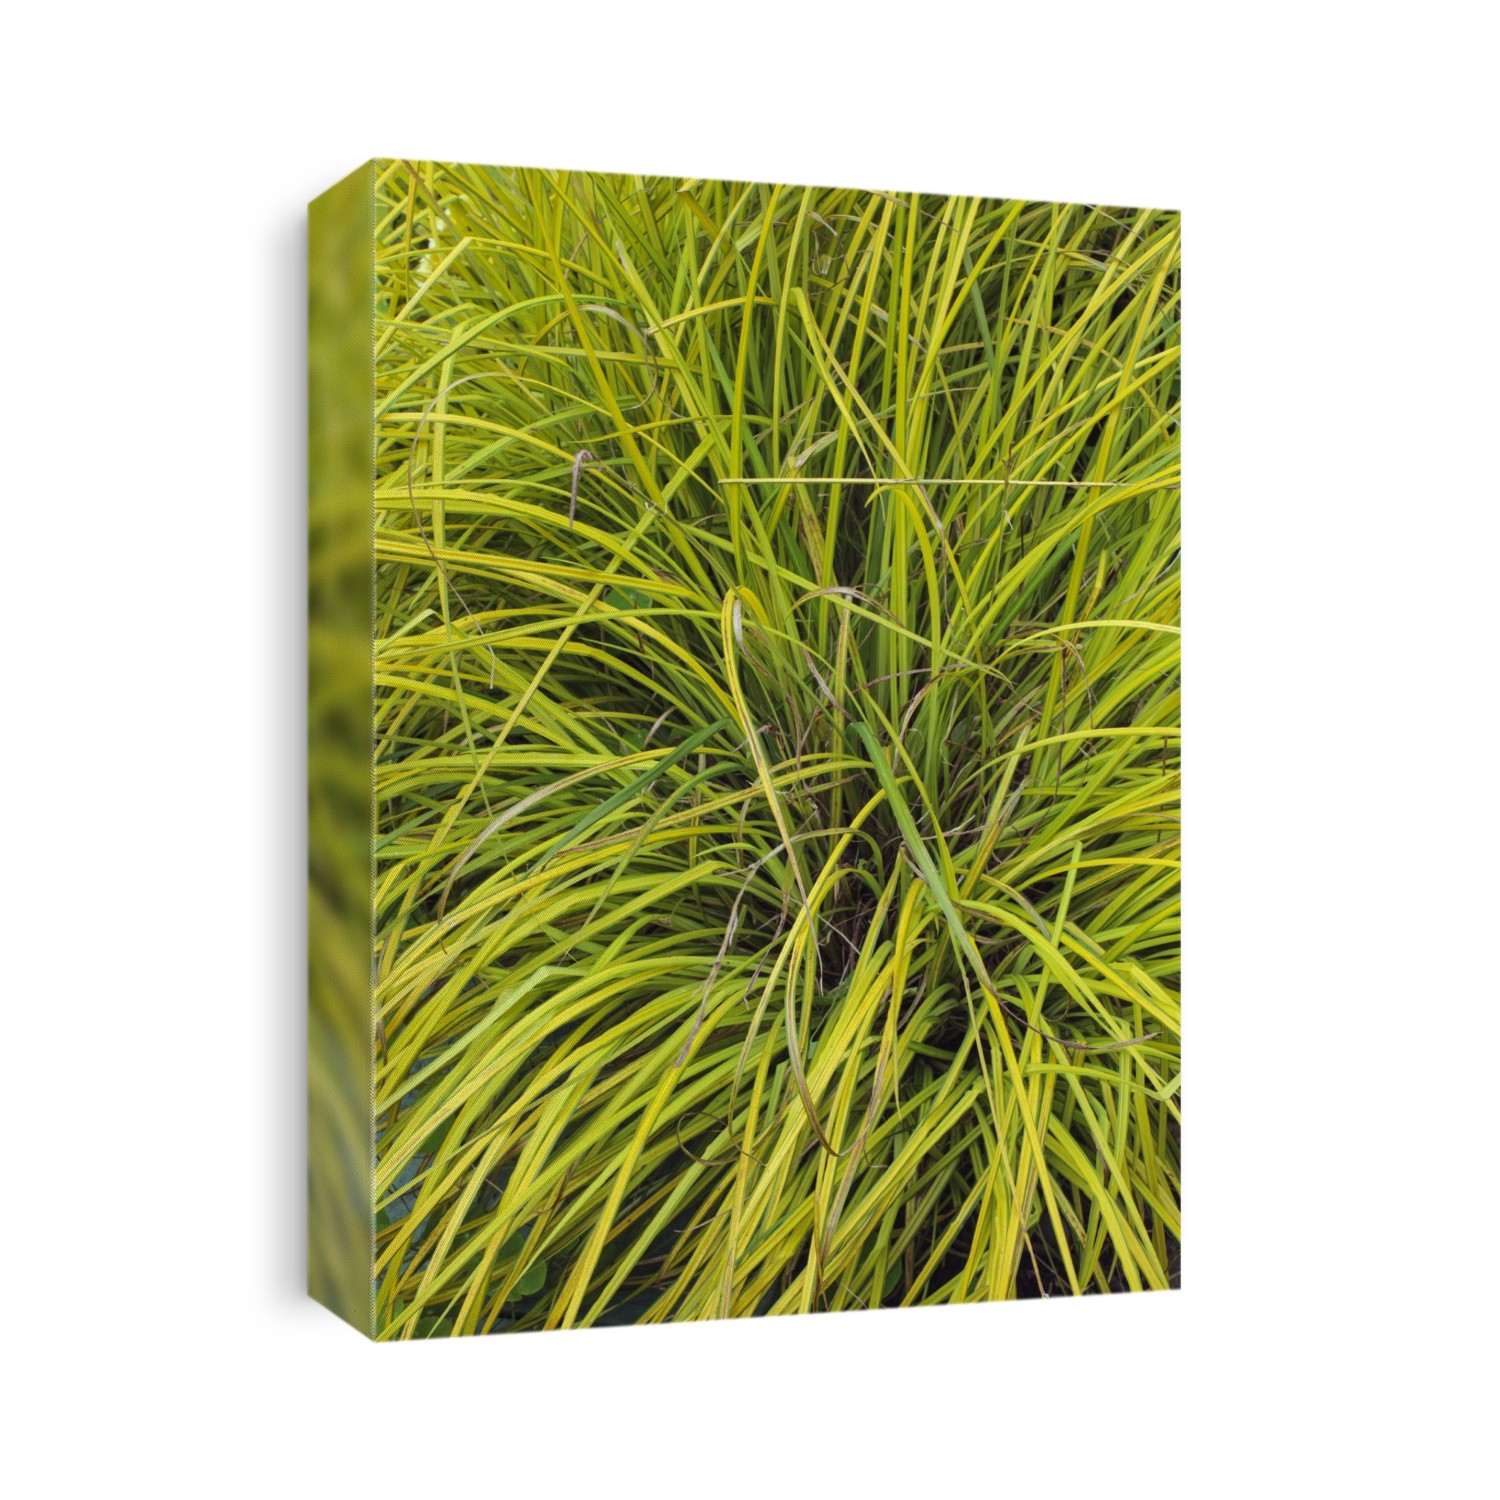 Bowles golden sedge (Carex elata 'Aurea'). syn Carex stricta 'Aurea'.